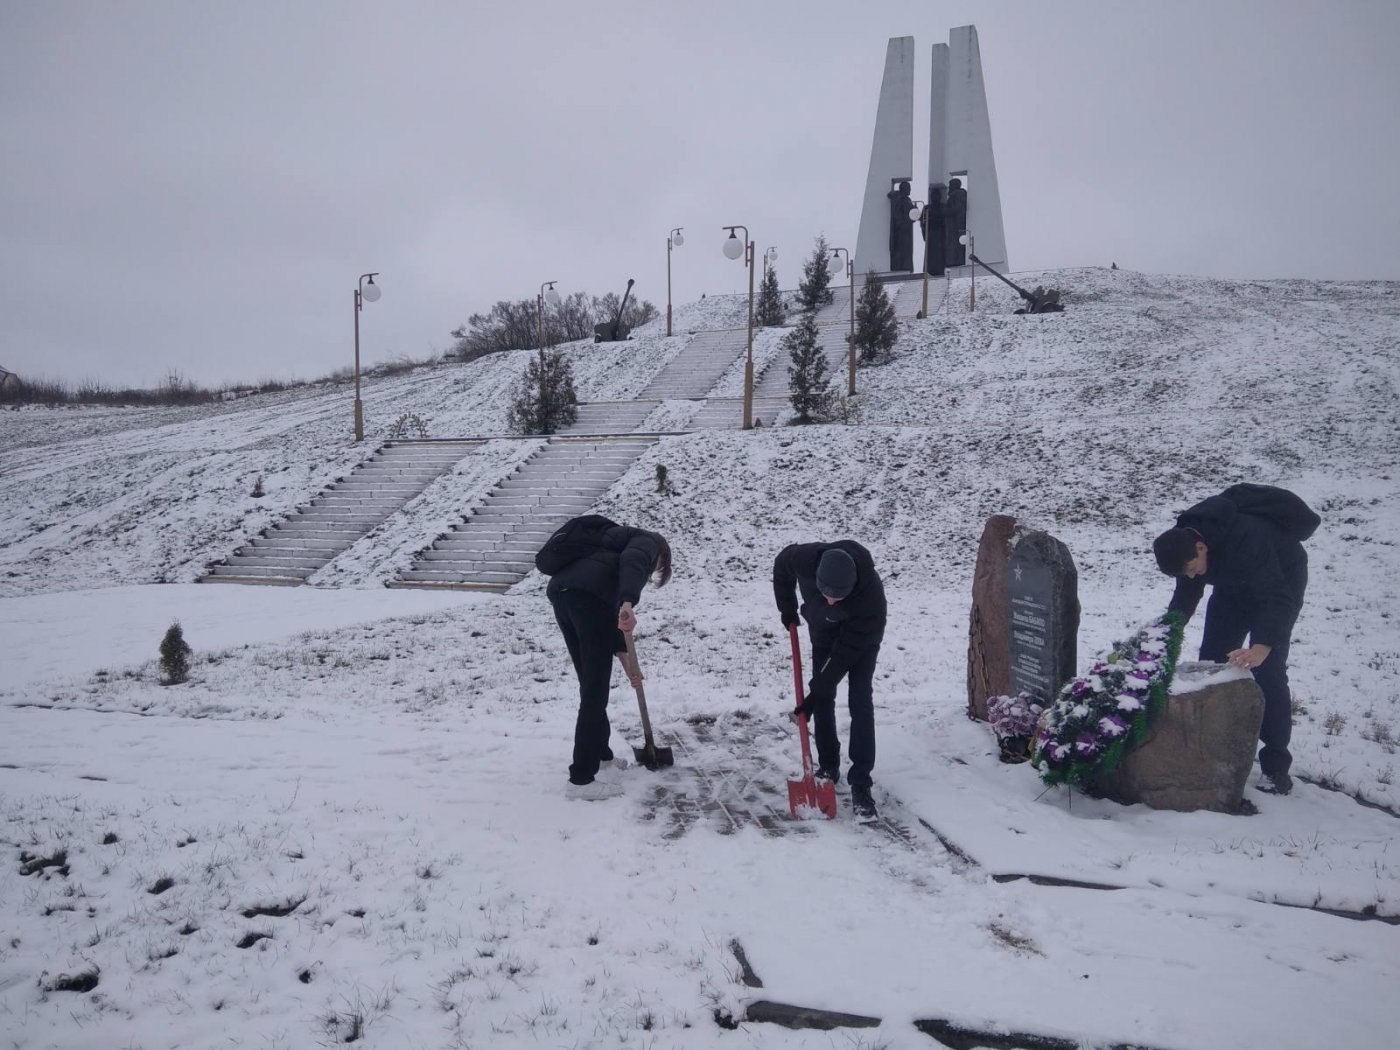 Учащиеся 10 "А" и 10 "Б" классов положили начало операции "Снежный бум" по расчистке снега на братской могиле советских воинов и партизан